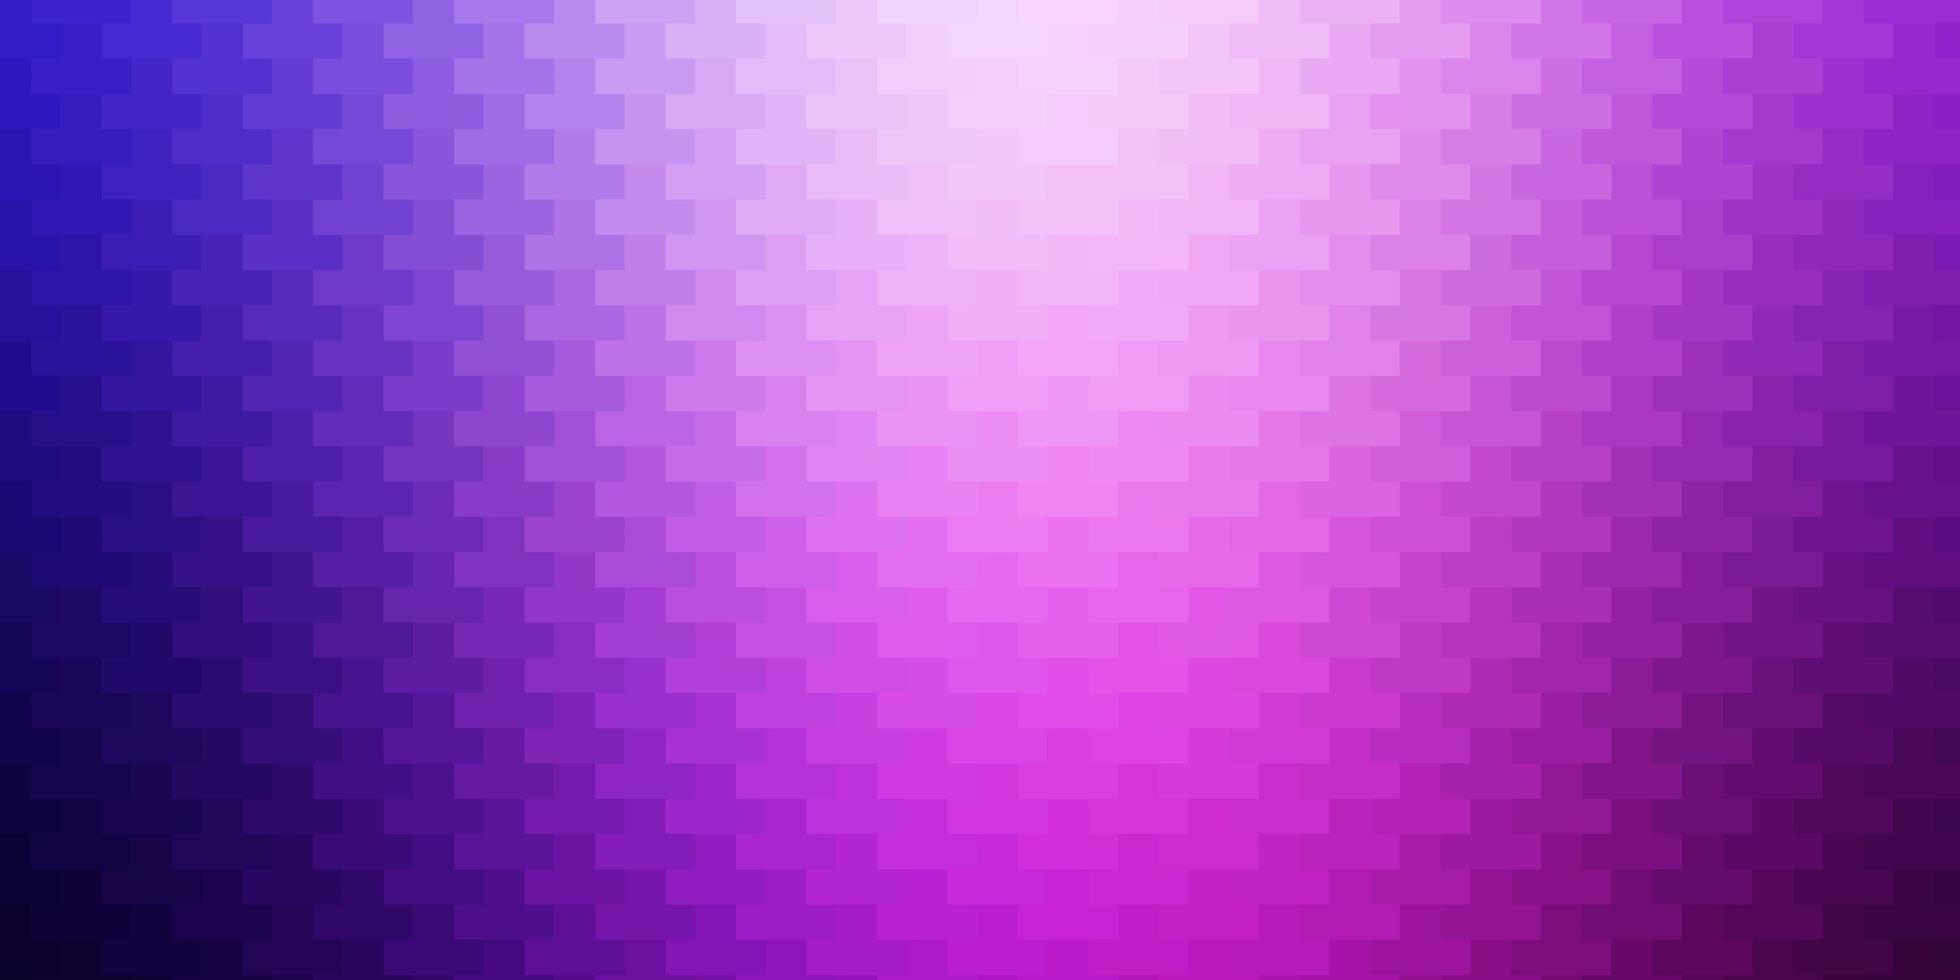 patrón de vector púrpura claro, rosa en estilo cuadrado.